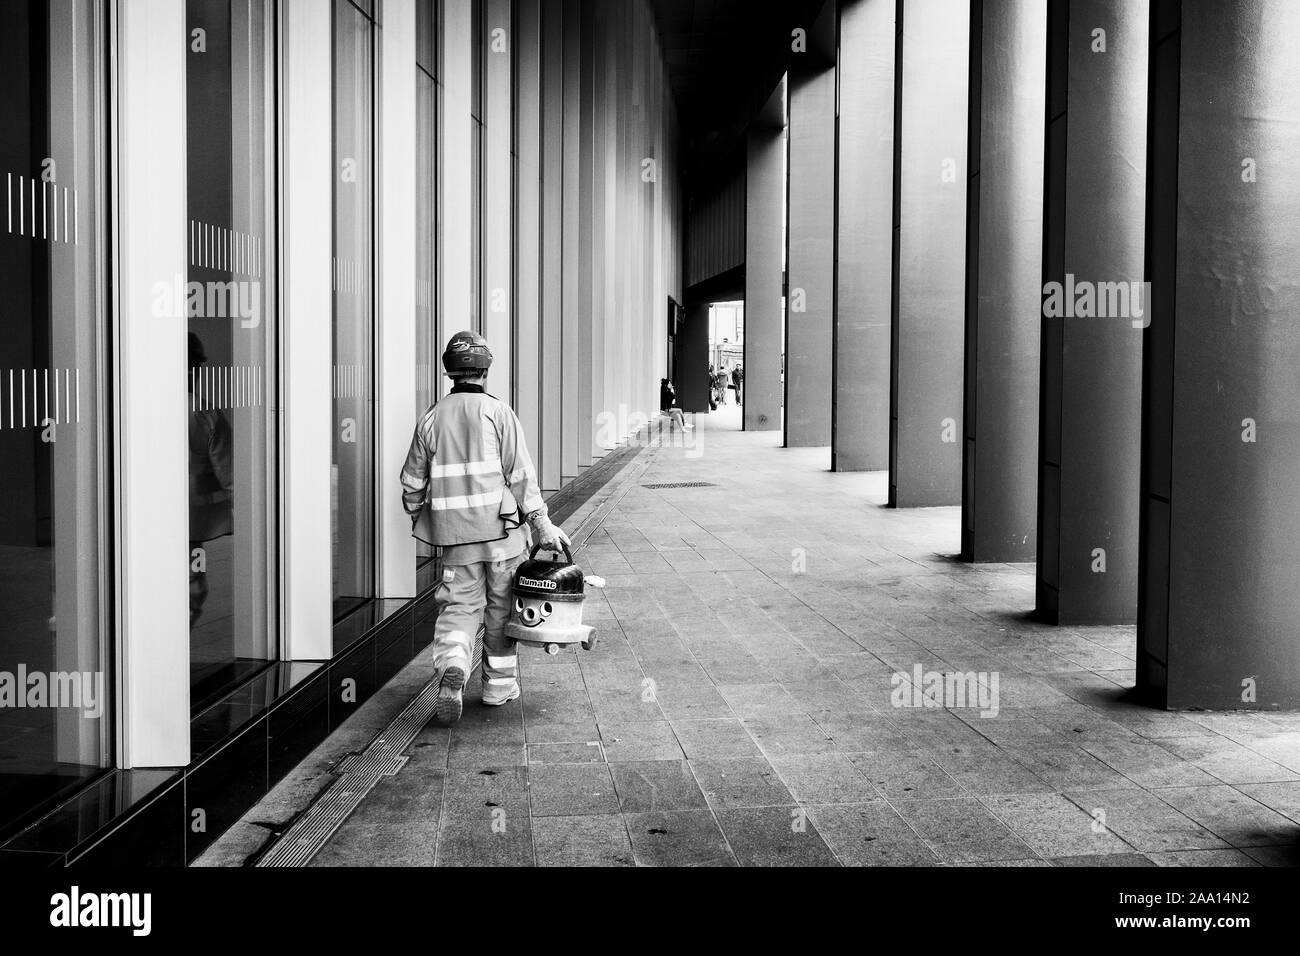 Londra in bianco e nero street photography: operaio che trasportano Numatic "Henry' aspirapolvere in strada. Foto Stock